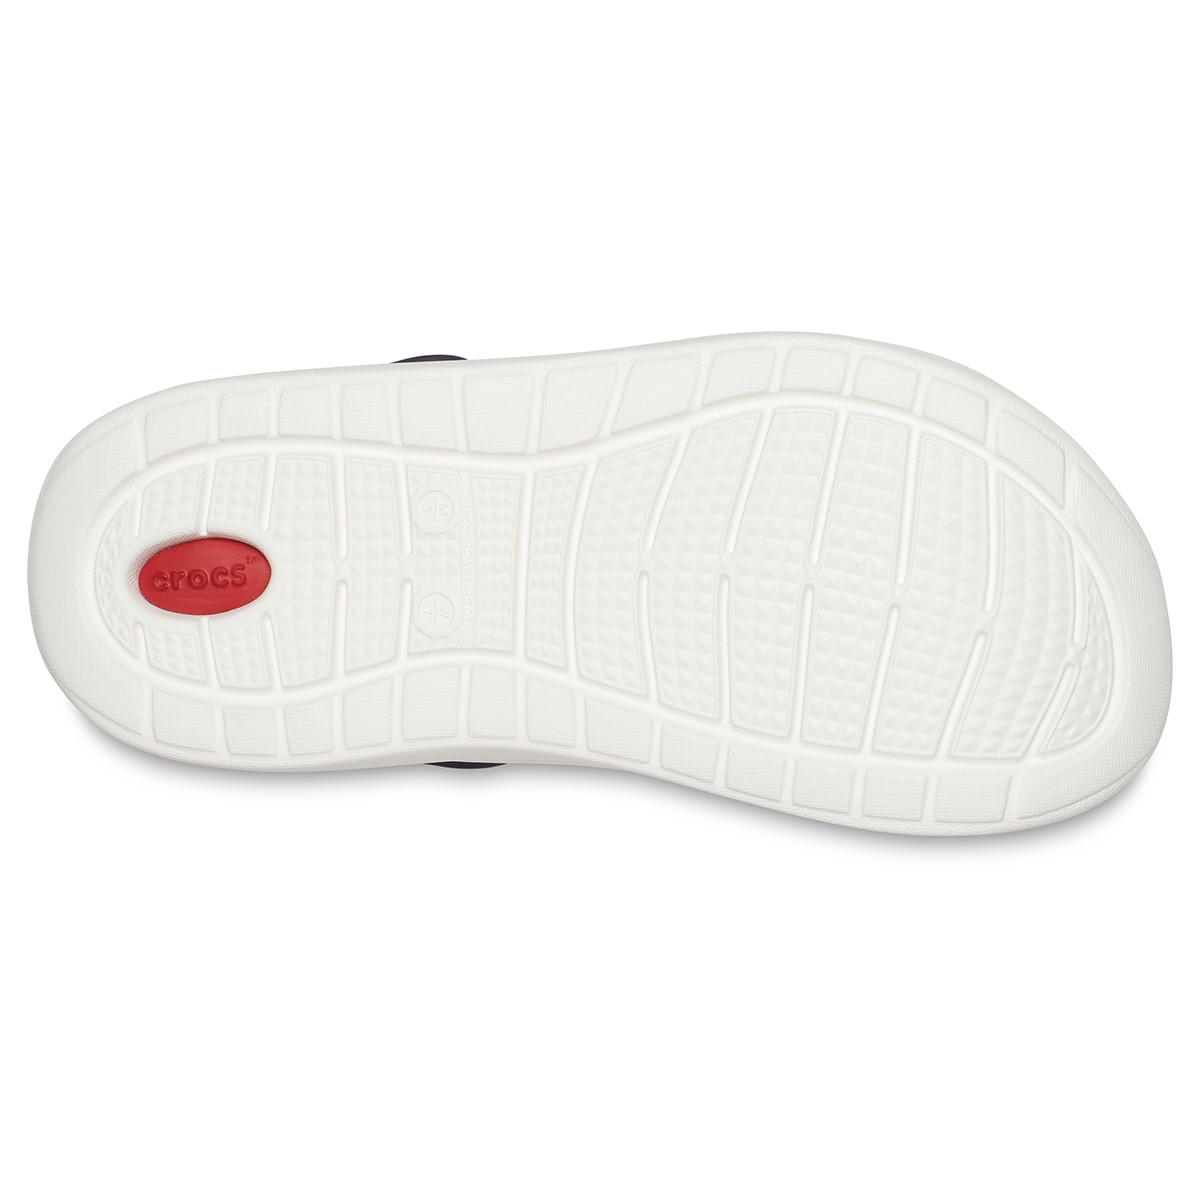 Crocs Unisex Sandalet 204592 Navy/Pepper